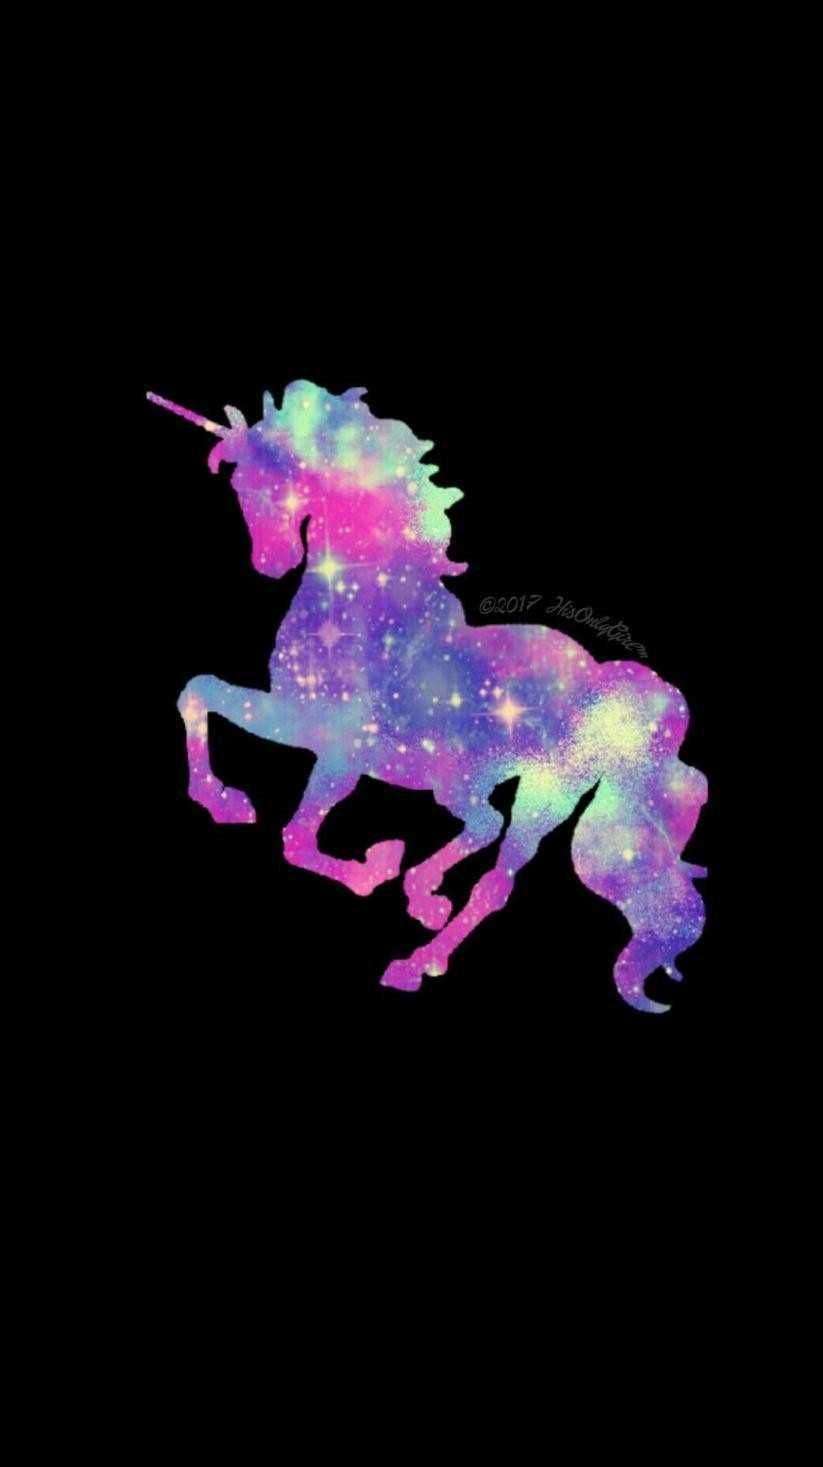 Galaxy Emoji Wallpaper - Unicornio con fondo Galaxy, Hd